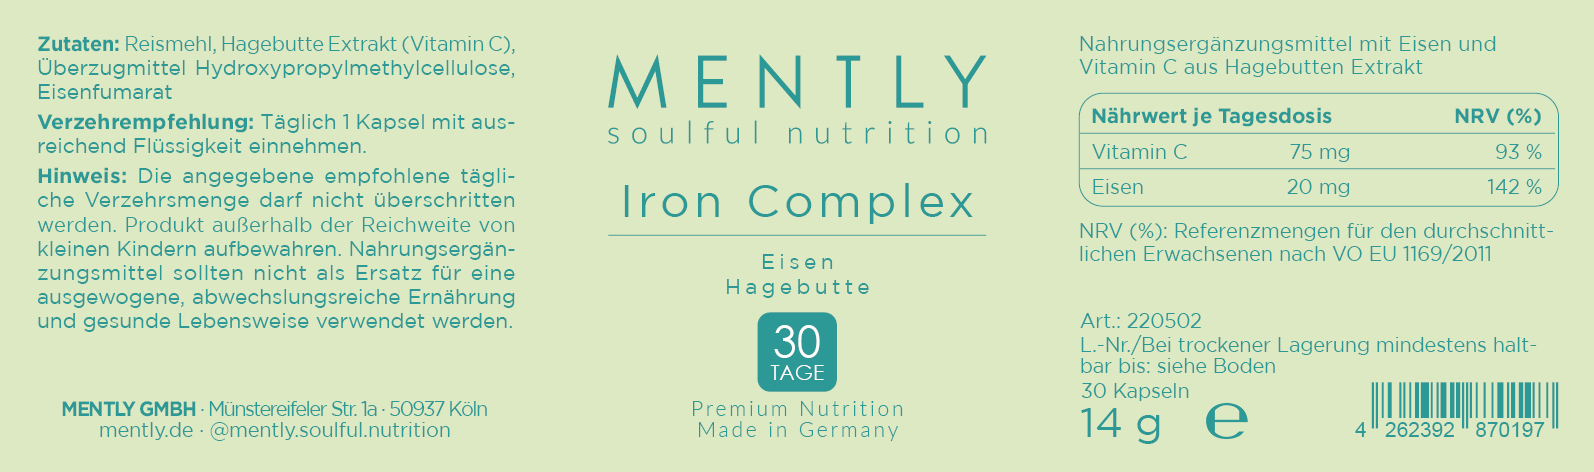 Mently Nahrungsergänzungsmittel Iron Complex